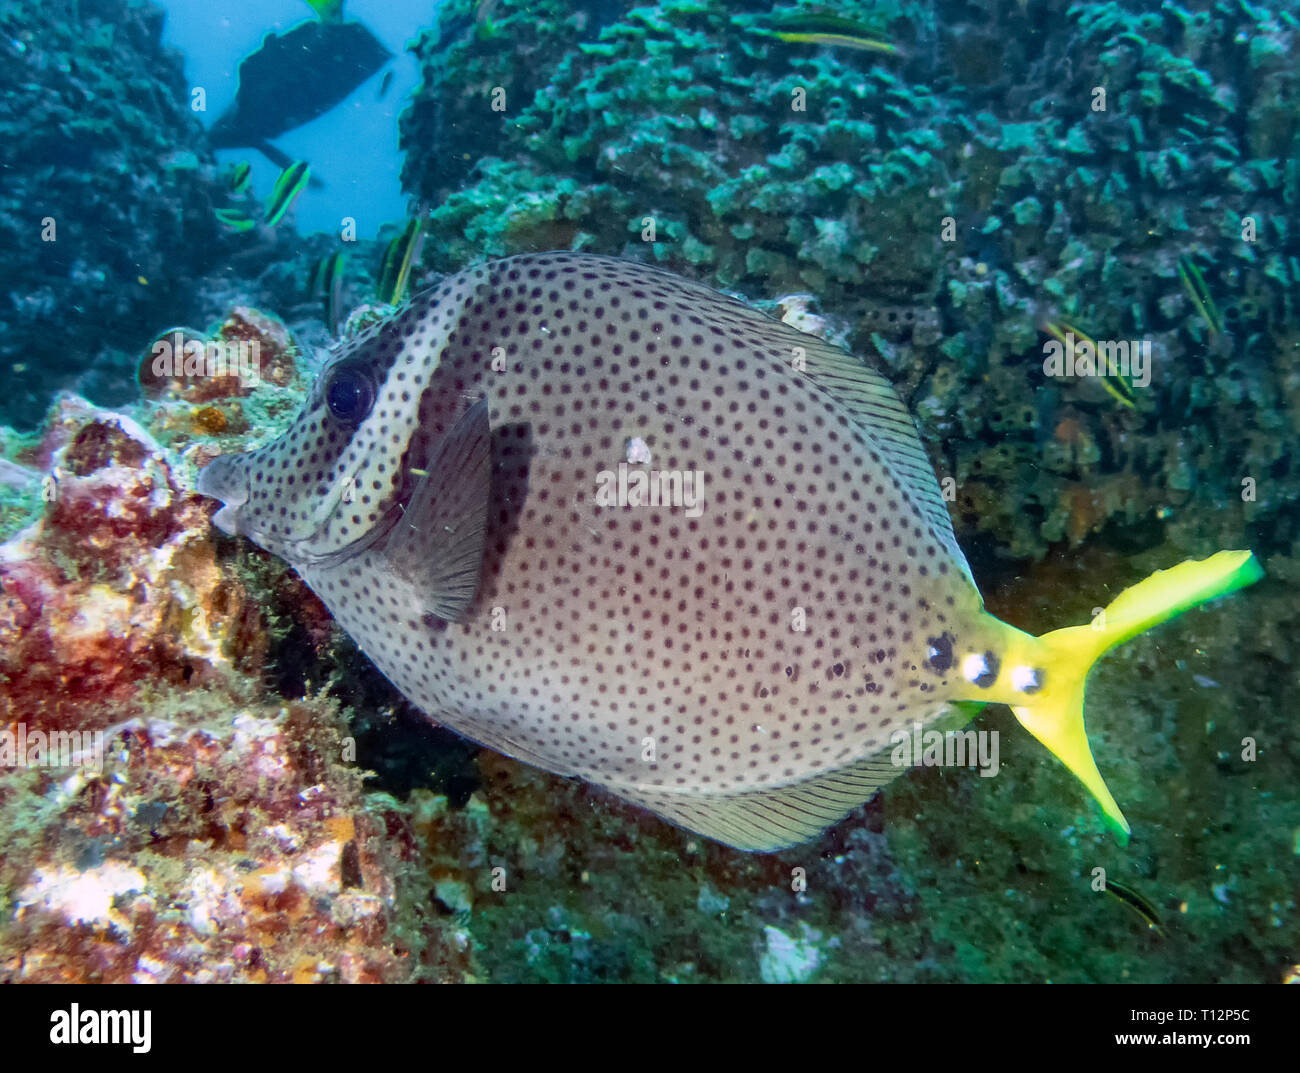 Yellowtail Surgeonfish (Prionurus punctatus) Stock Photo